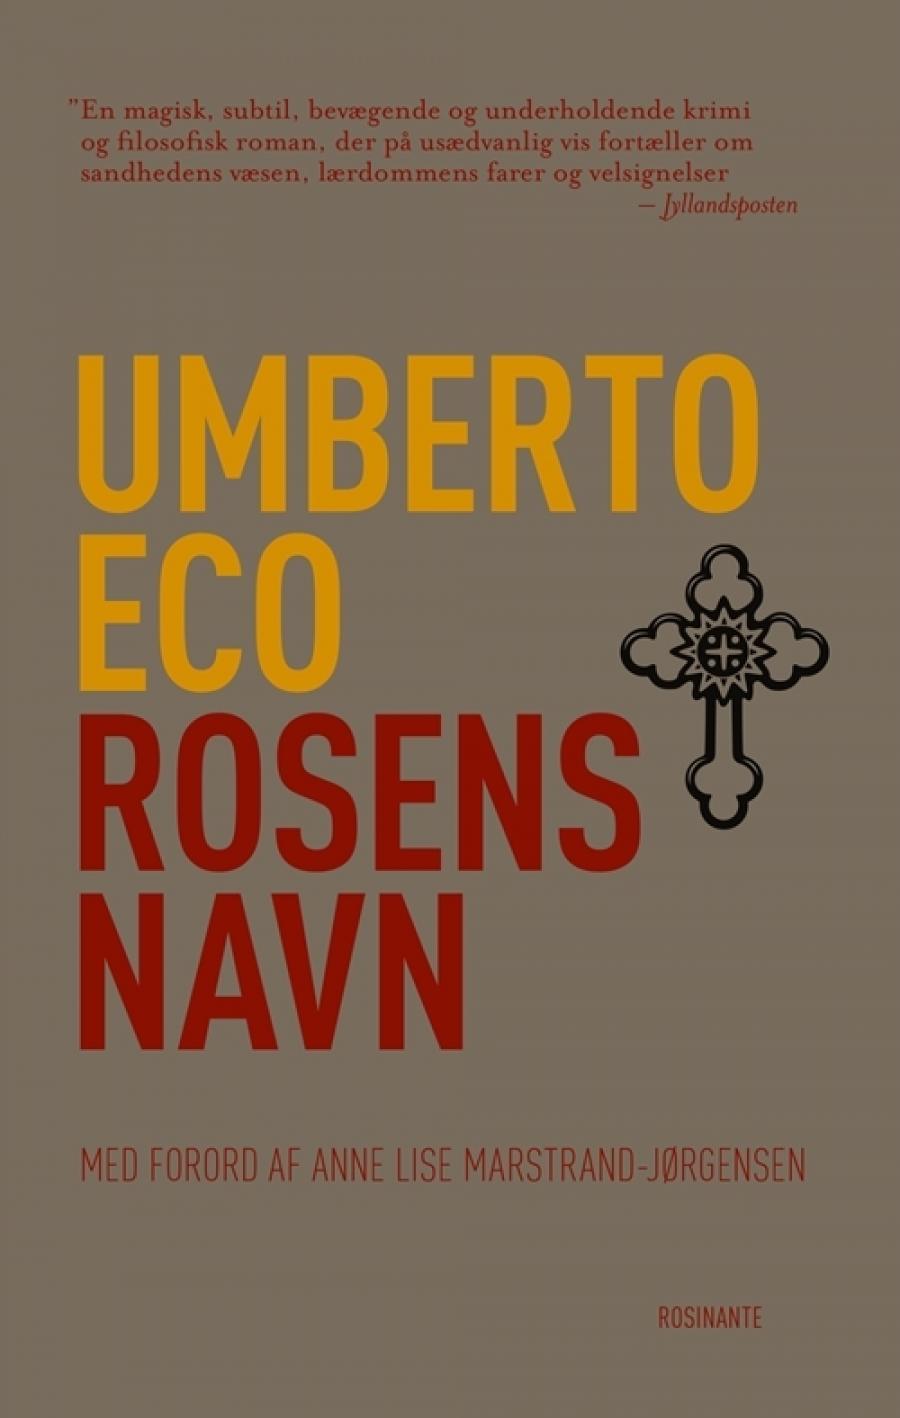 Forsiden af bogen Rosens navn af Umberto Eco